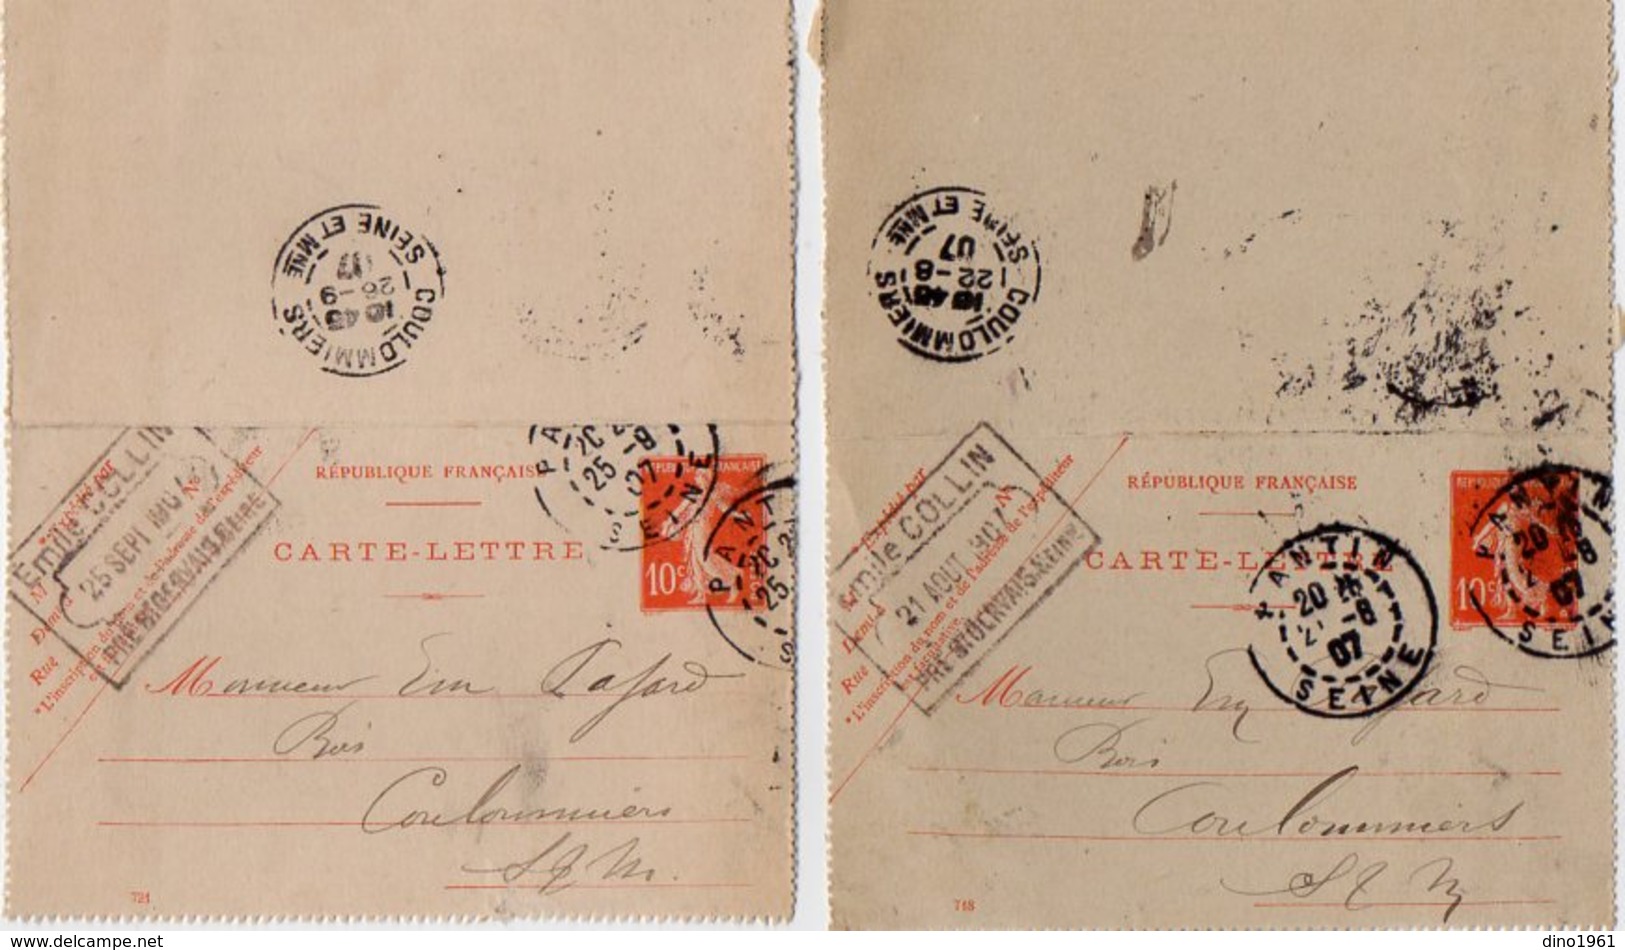 TB 2343 - Entier Postal - Emile COLLIN Au PRE SAINT GERVAIS - MP PANTIN 1907 Pour COULOMMIERS - Kaartbrieven